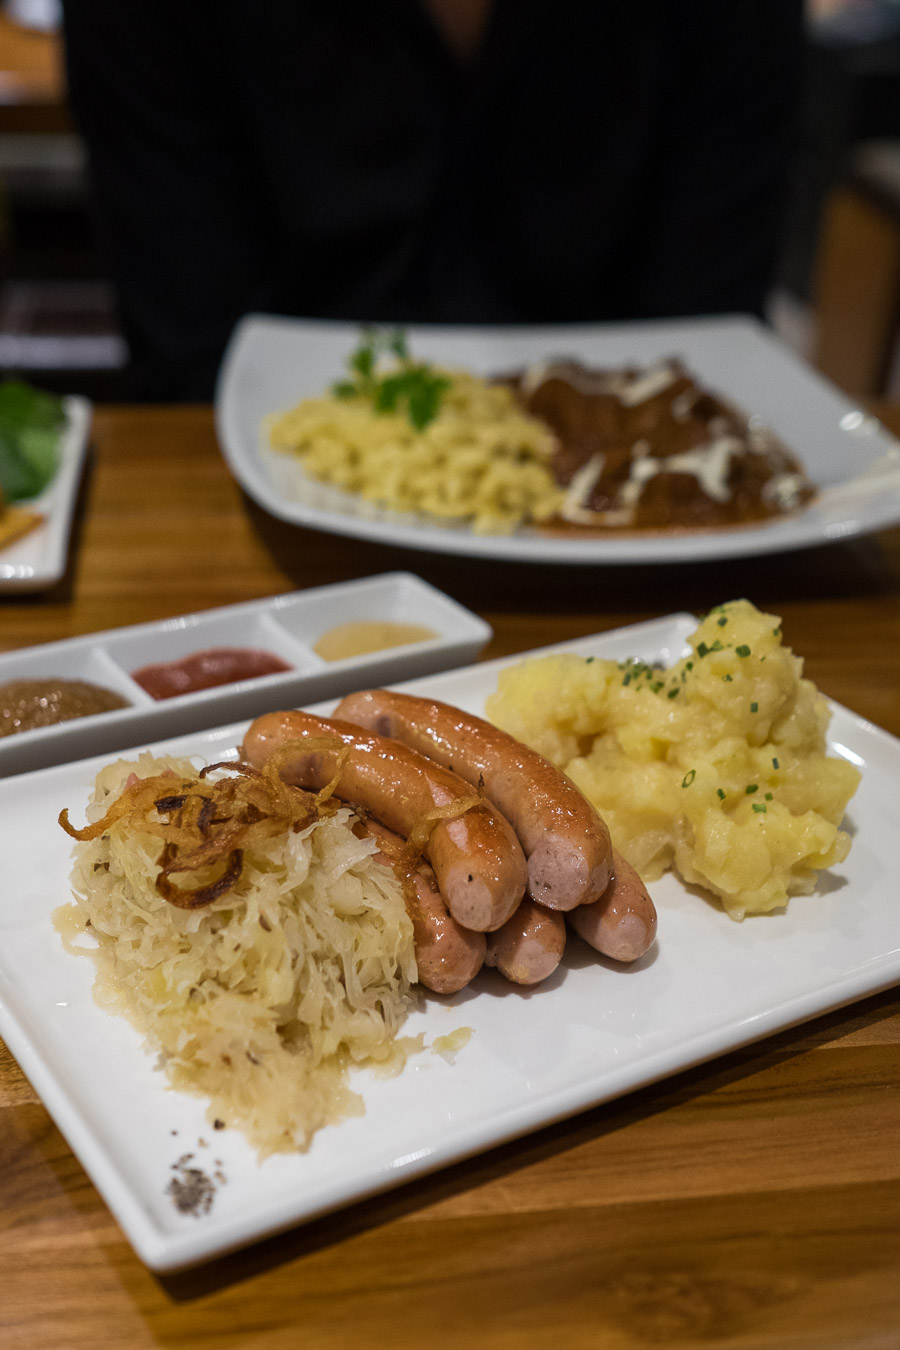 Pork sausages with sauerkraut and potato salad